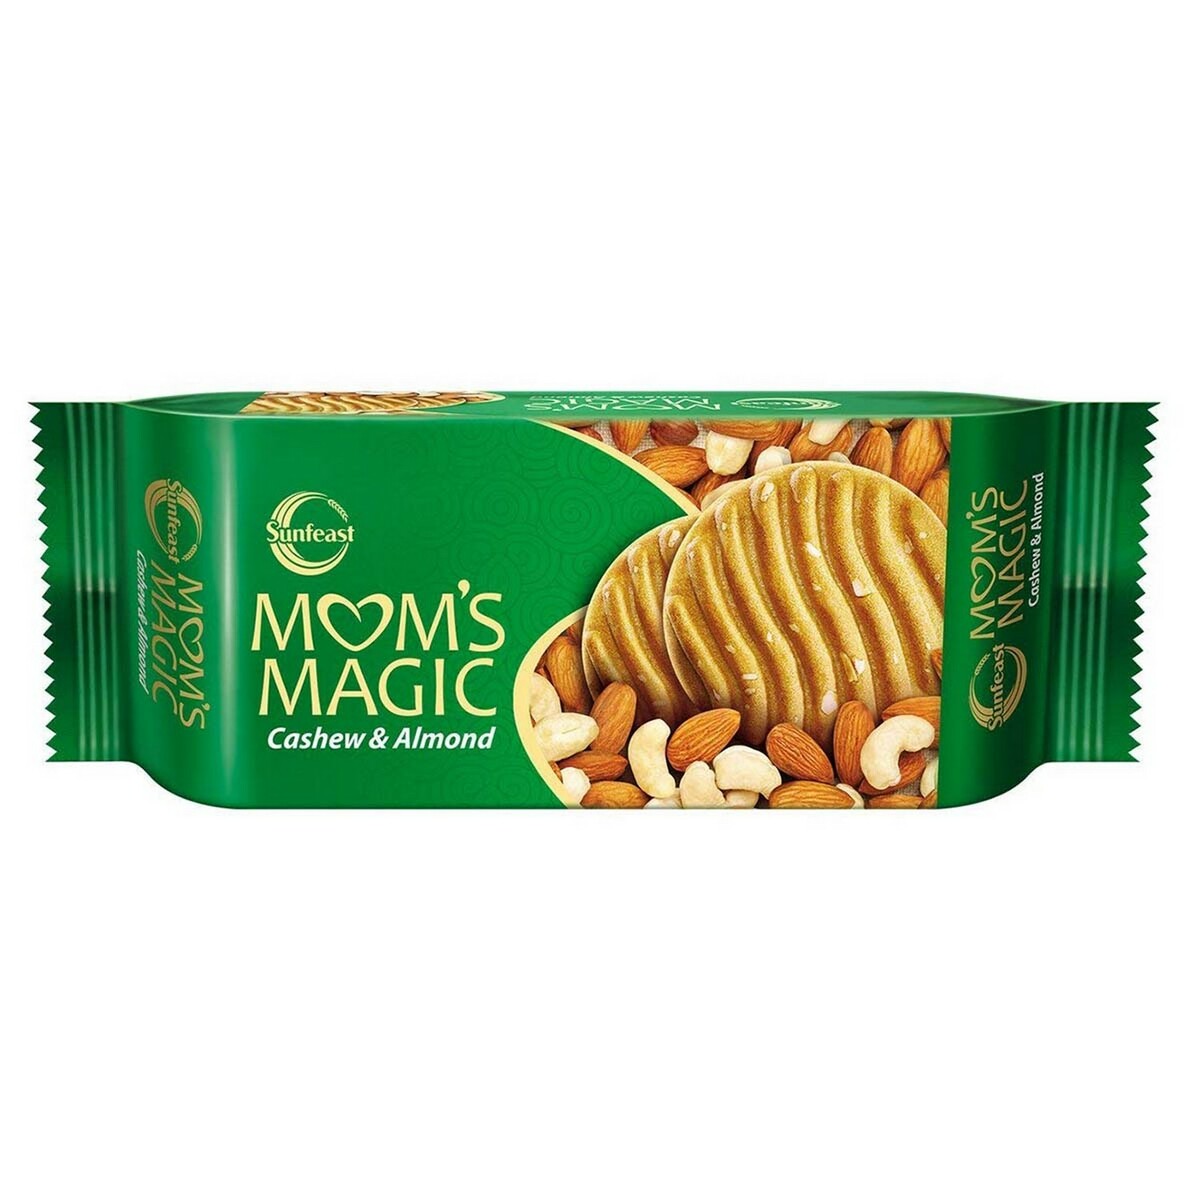    Sunfeast Moms Magic Cashew & Almond 197gm